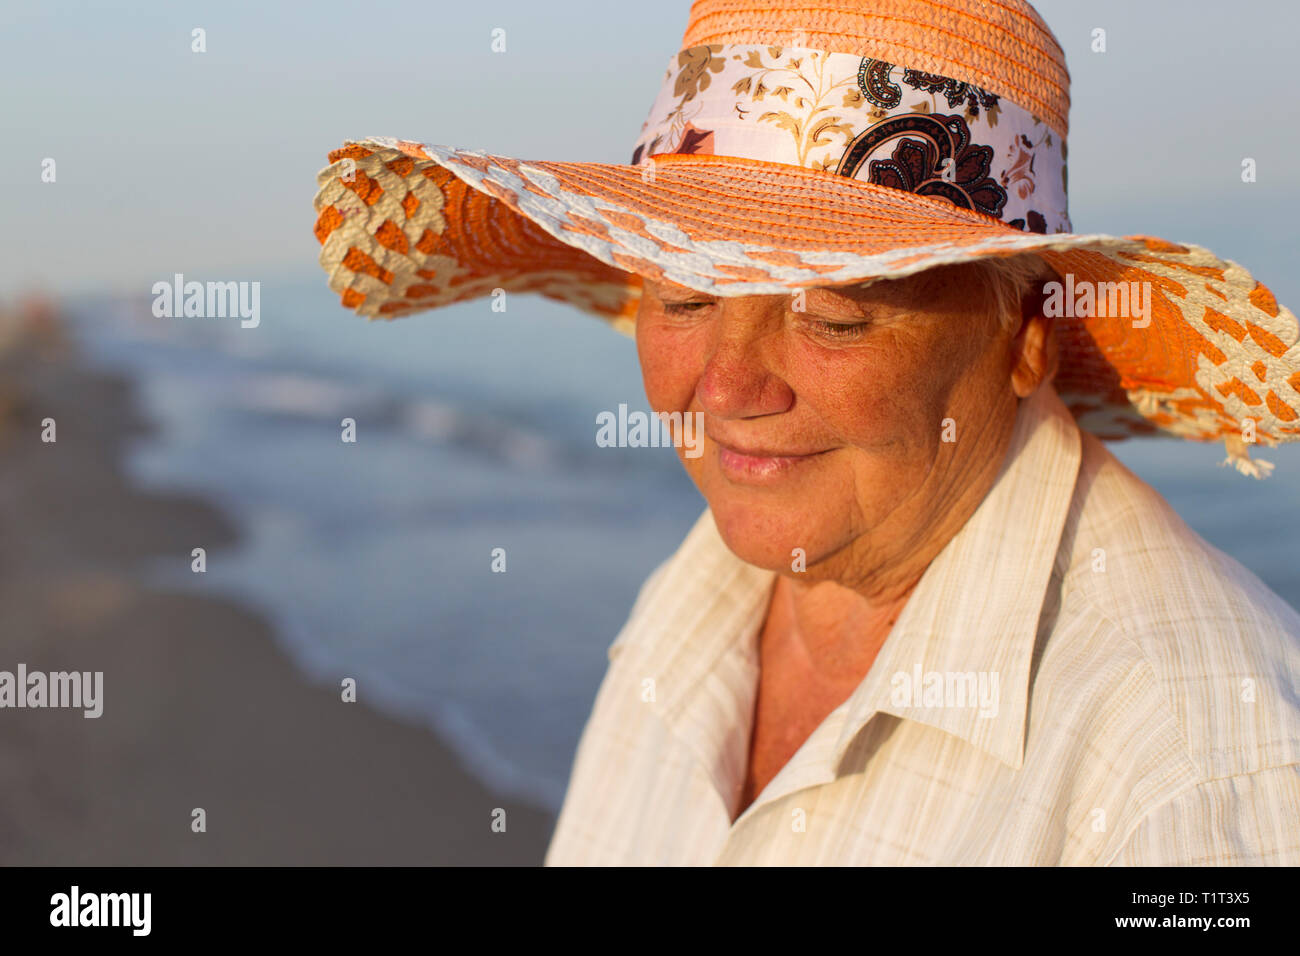 Schöne ältere Frau in einen Hut im Hintergrund auf das Meer. Gesicht einer  alten Frau mit einem Lächeln. Oma auf Urlaub Stockfotografie - Alamy